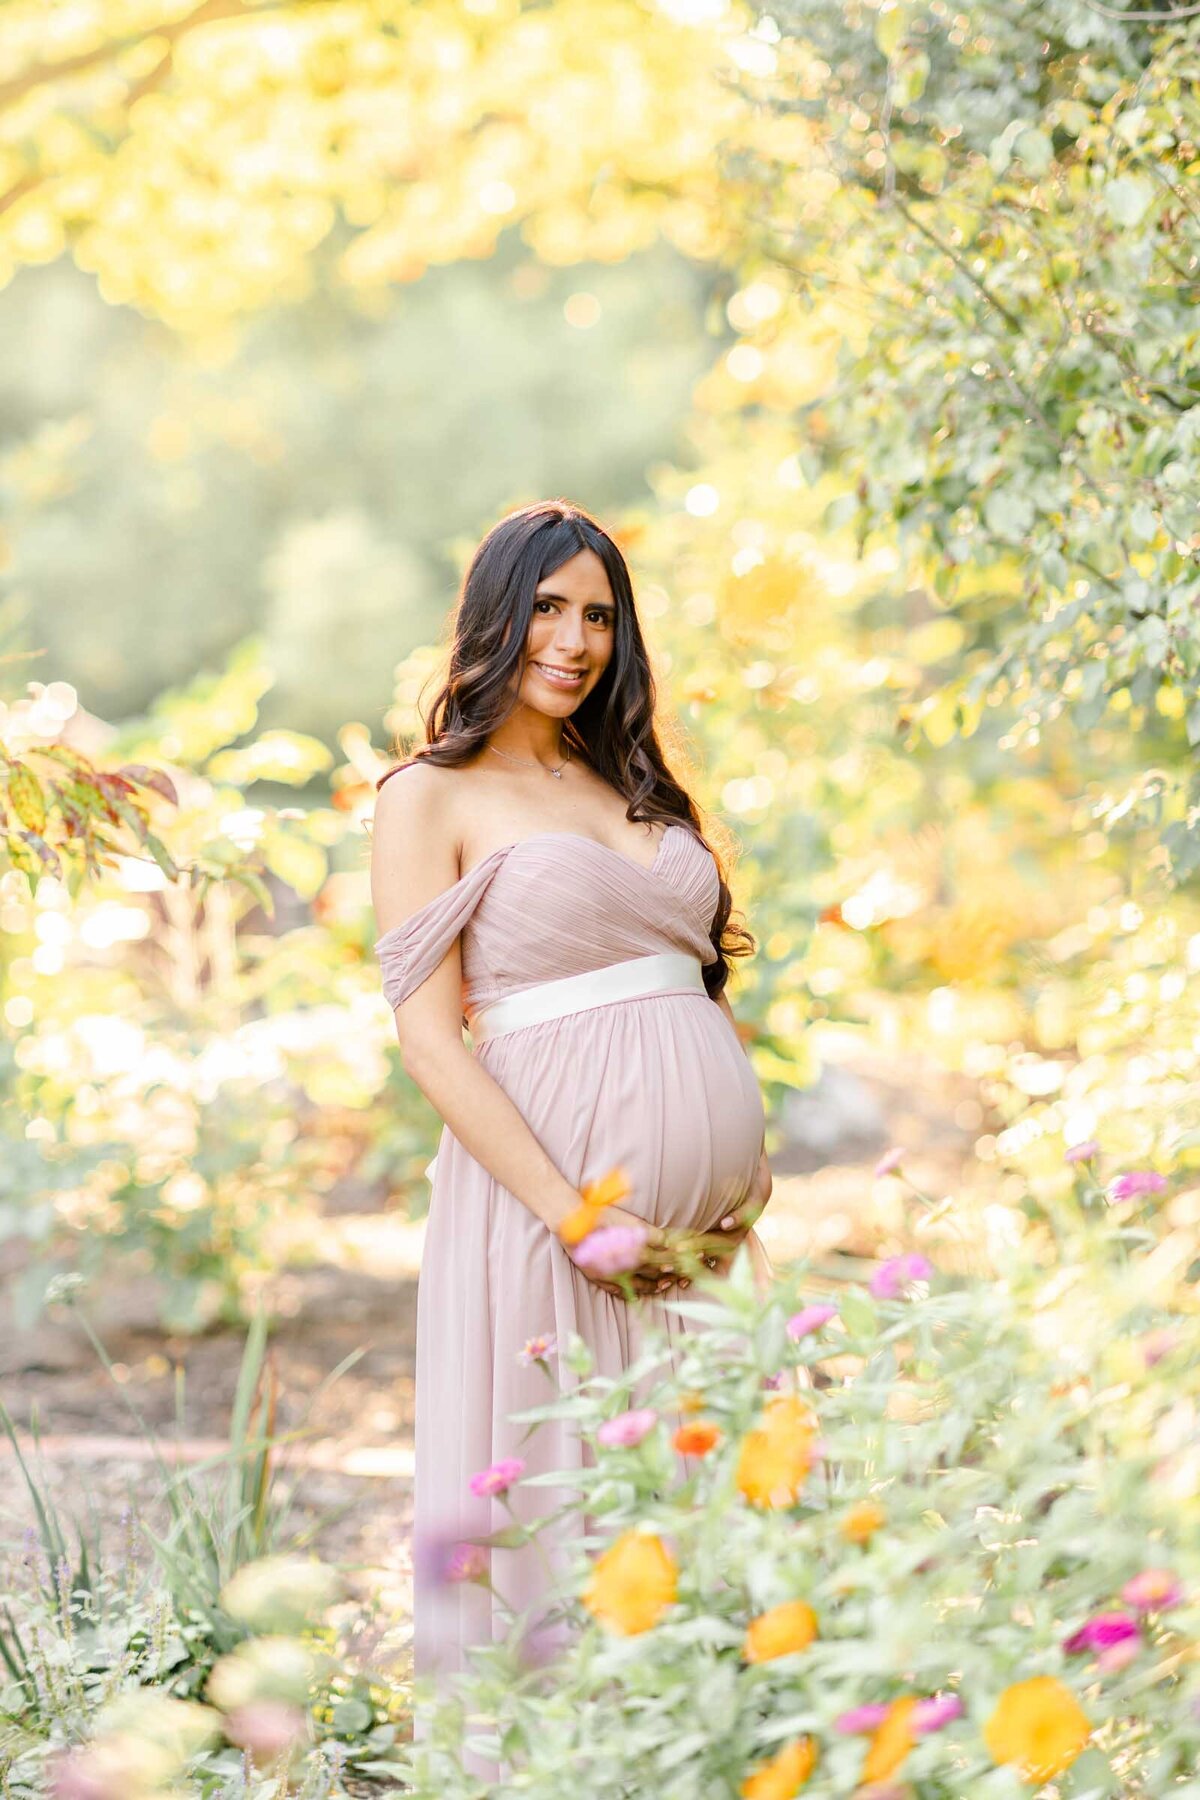 Maternity Photographer Arlington Va - Heidi Fam Photography